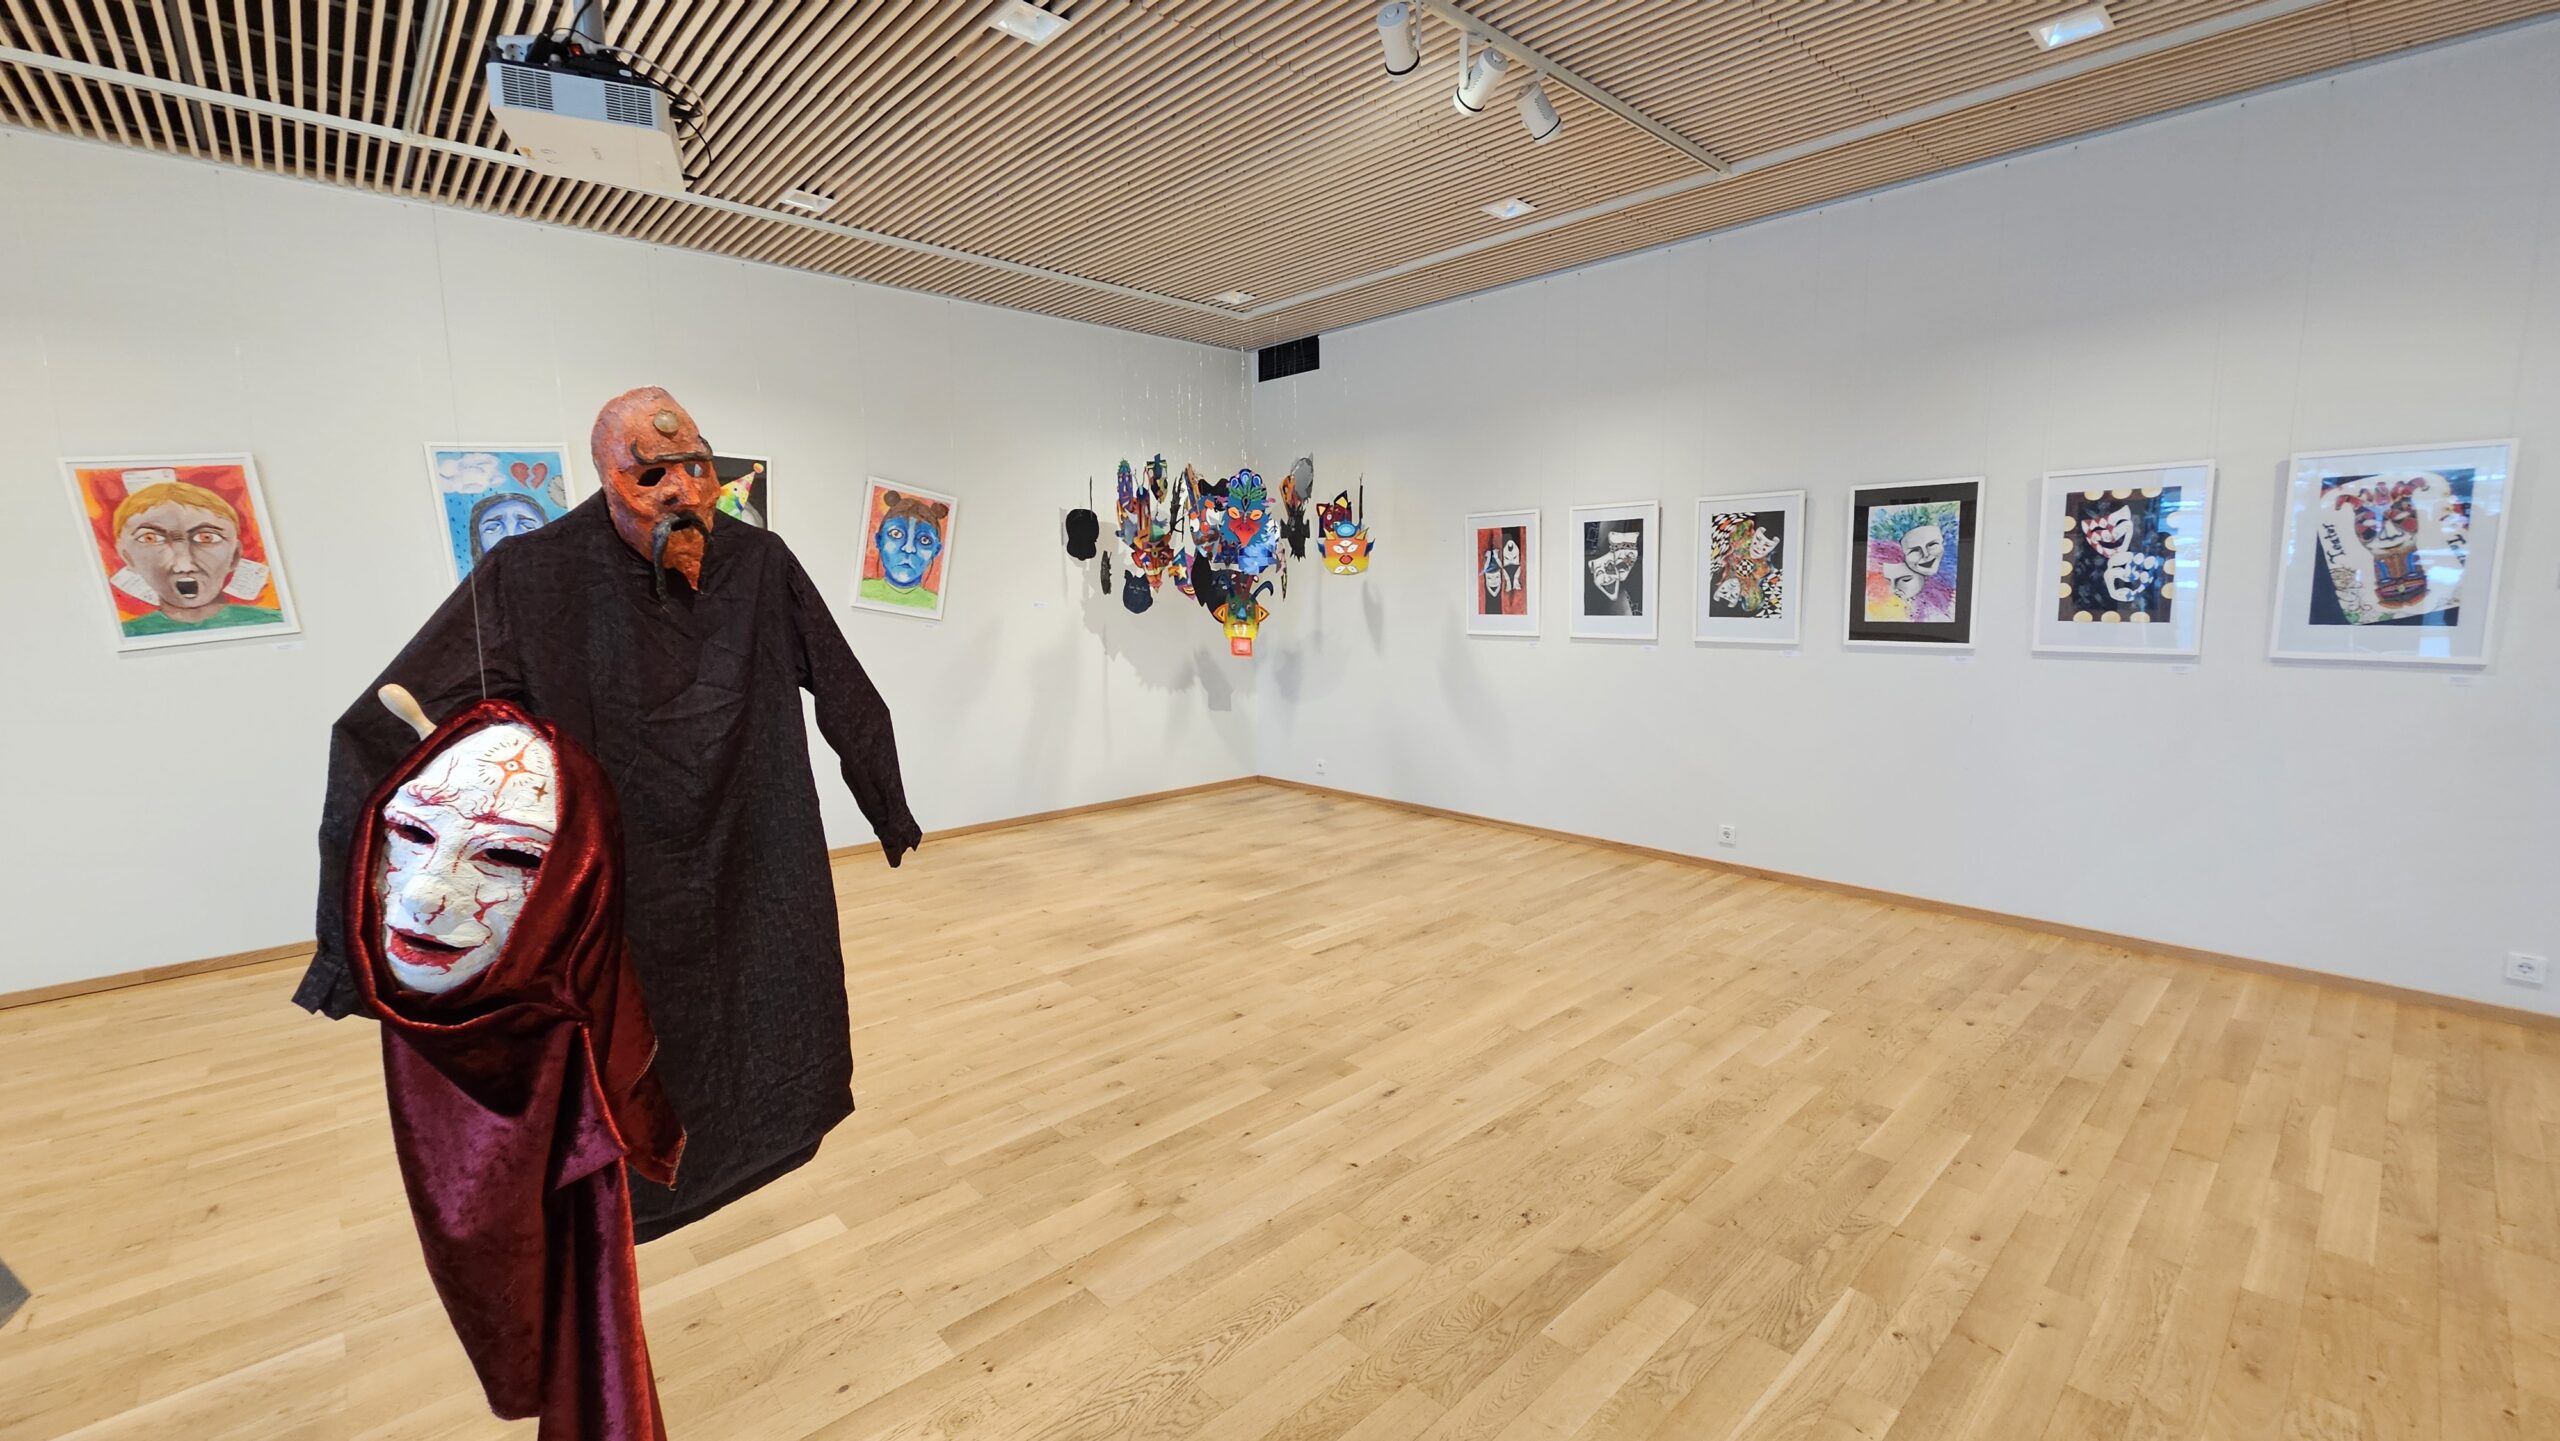 2024 aprilli alguses avati Viimsi Kunstikooli galeriis näitus "Teatraalium", mison Haapsalu ja Viimsi Kunstikooli esimene koostöönäitus. Idee sai algu